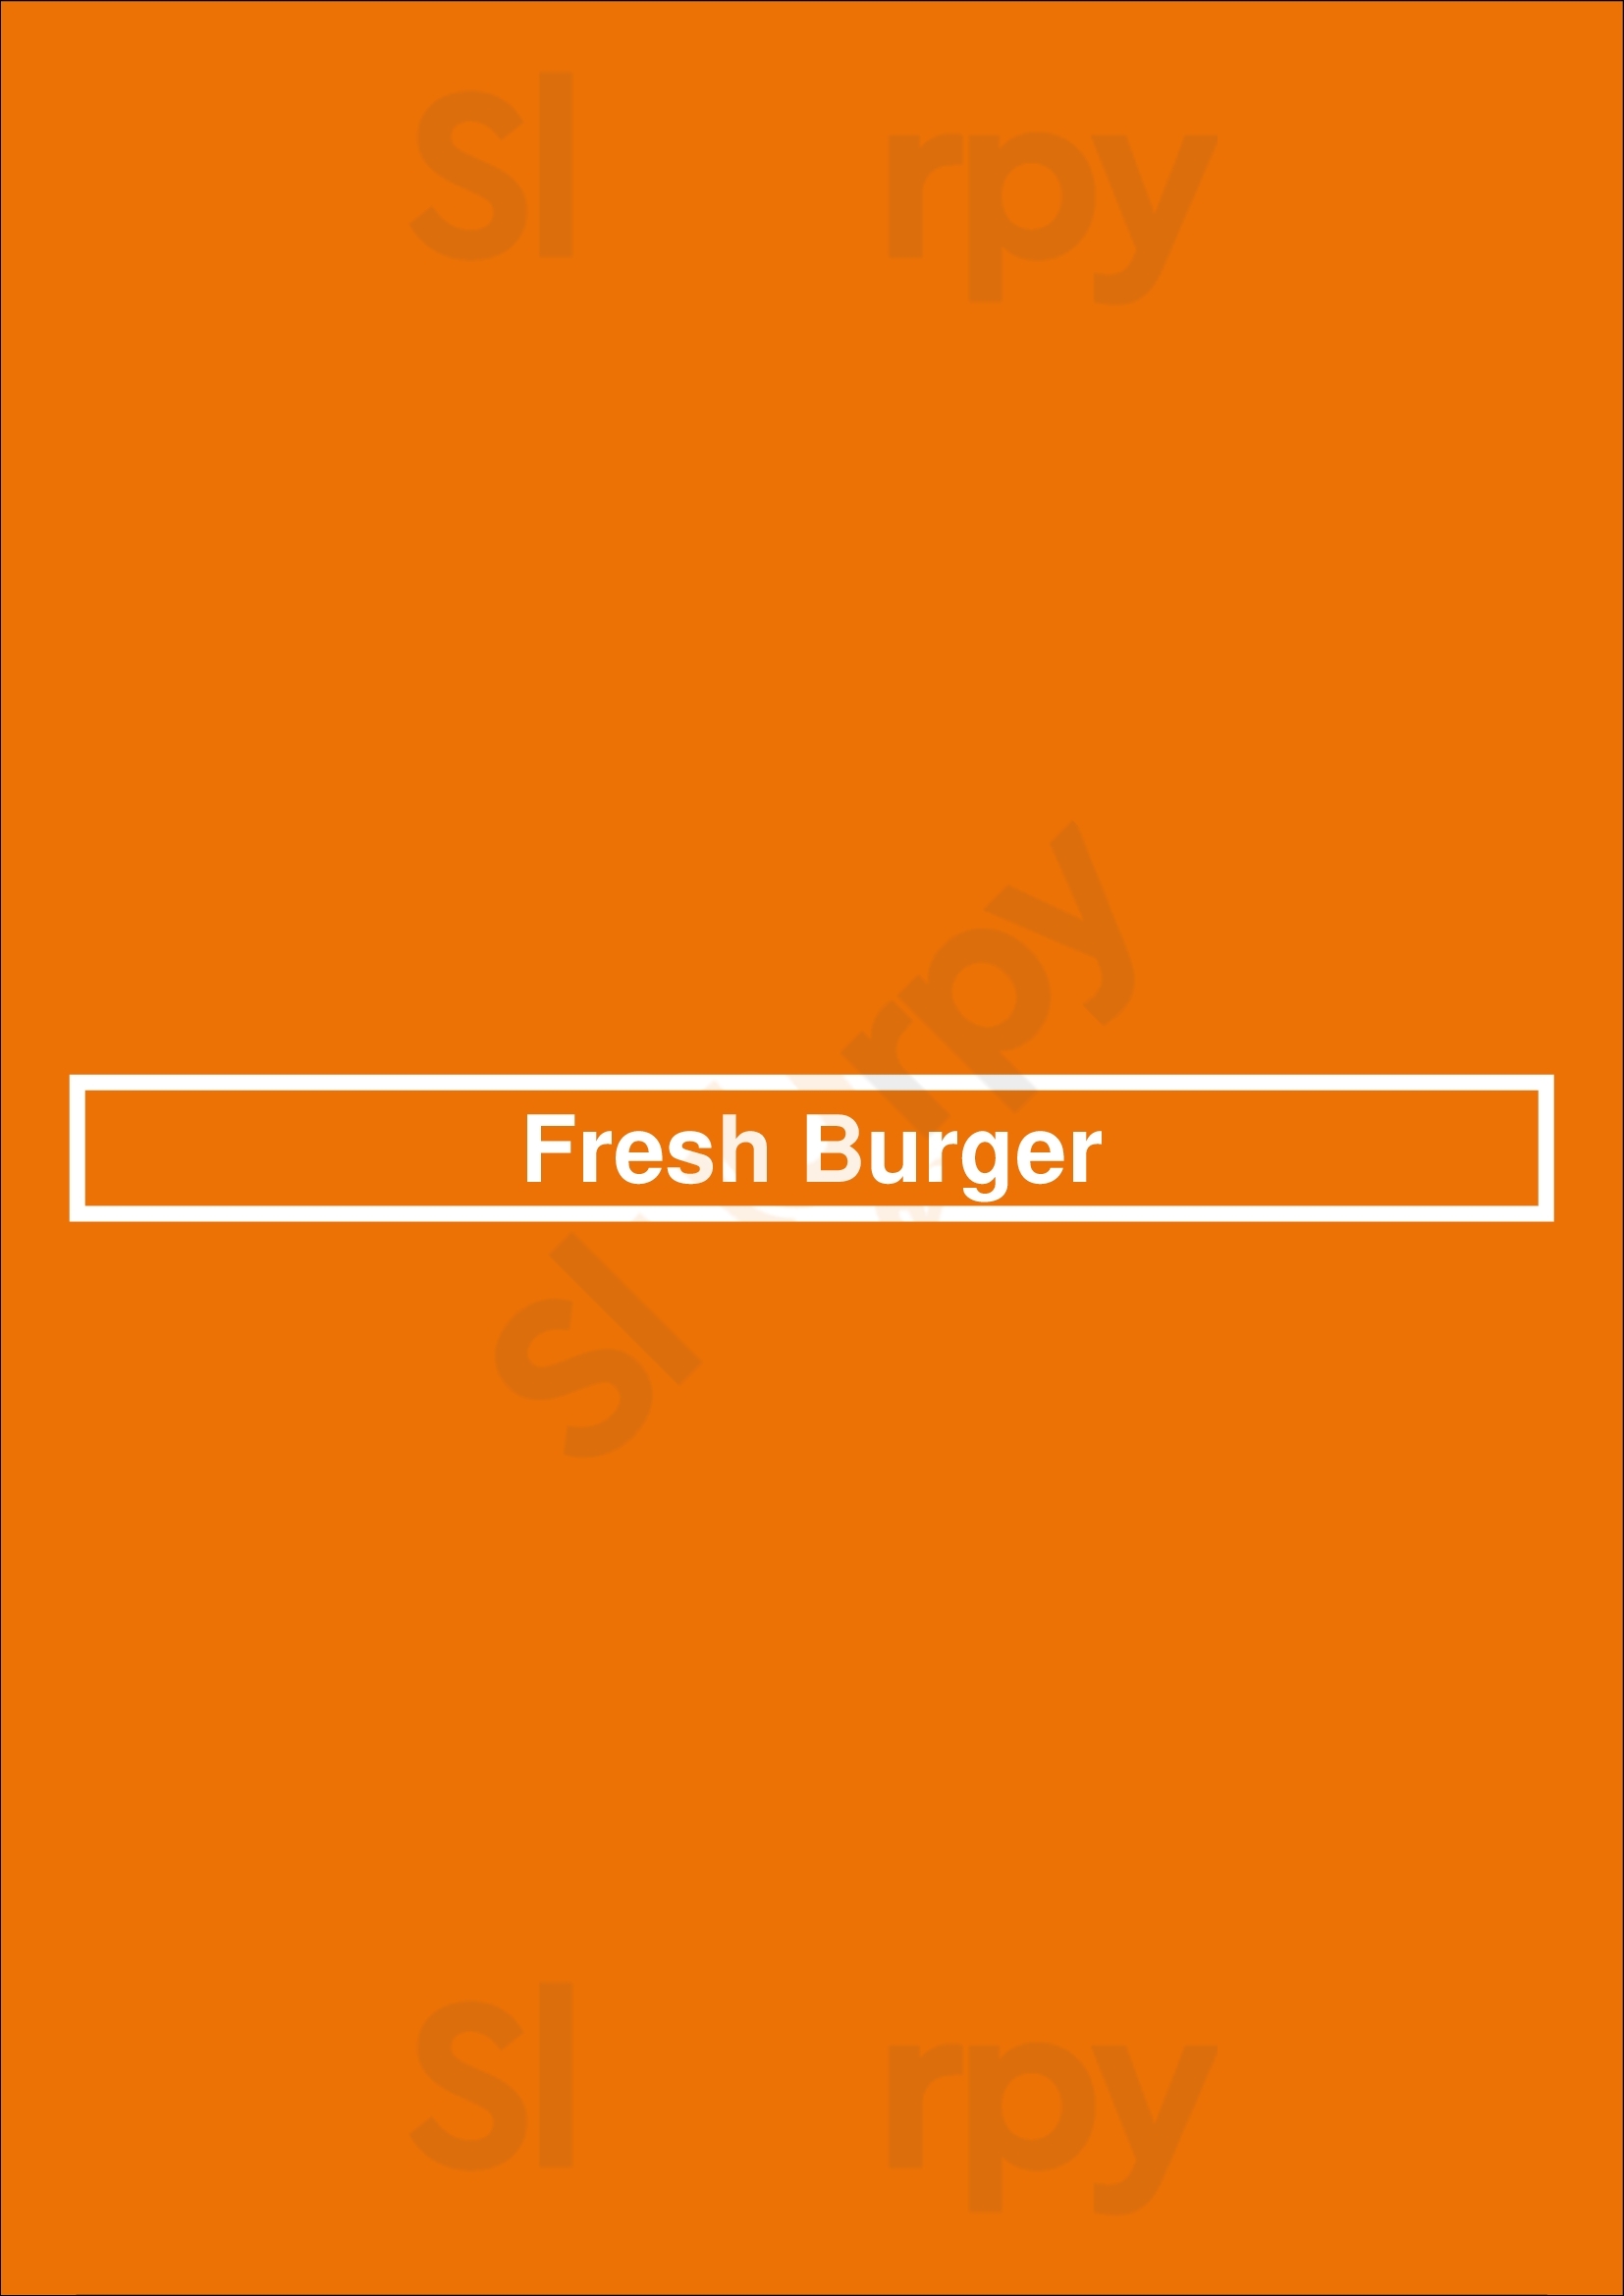 Fresh Burger Toronto Menu - 1